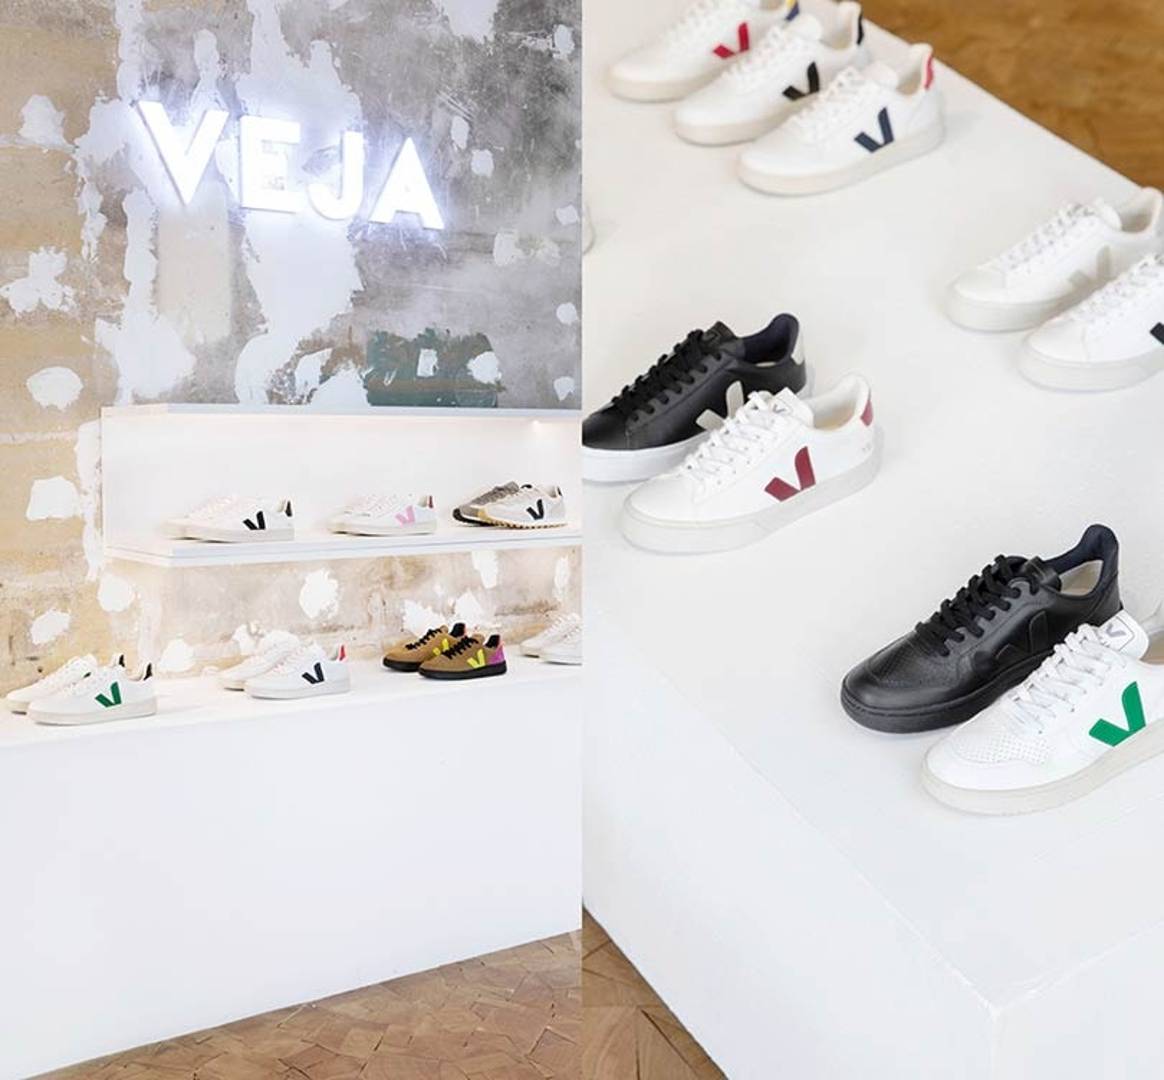 Binnenkijken: De eerste winkel van schoenenmerk Veja